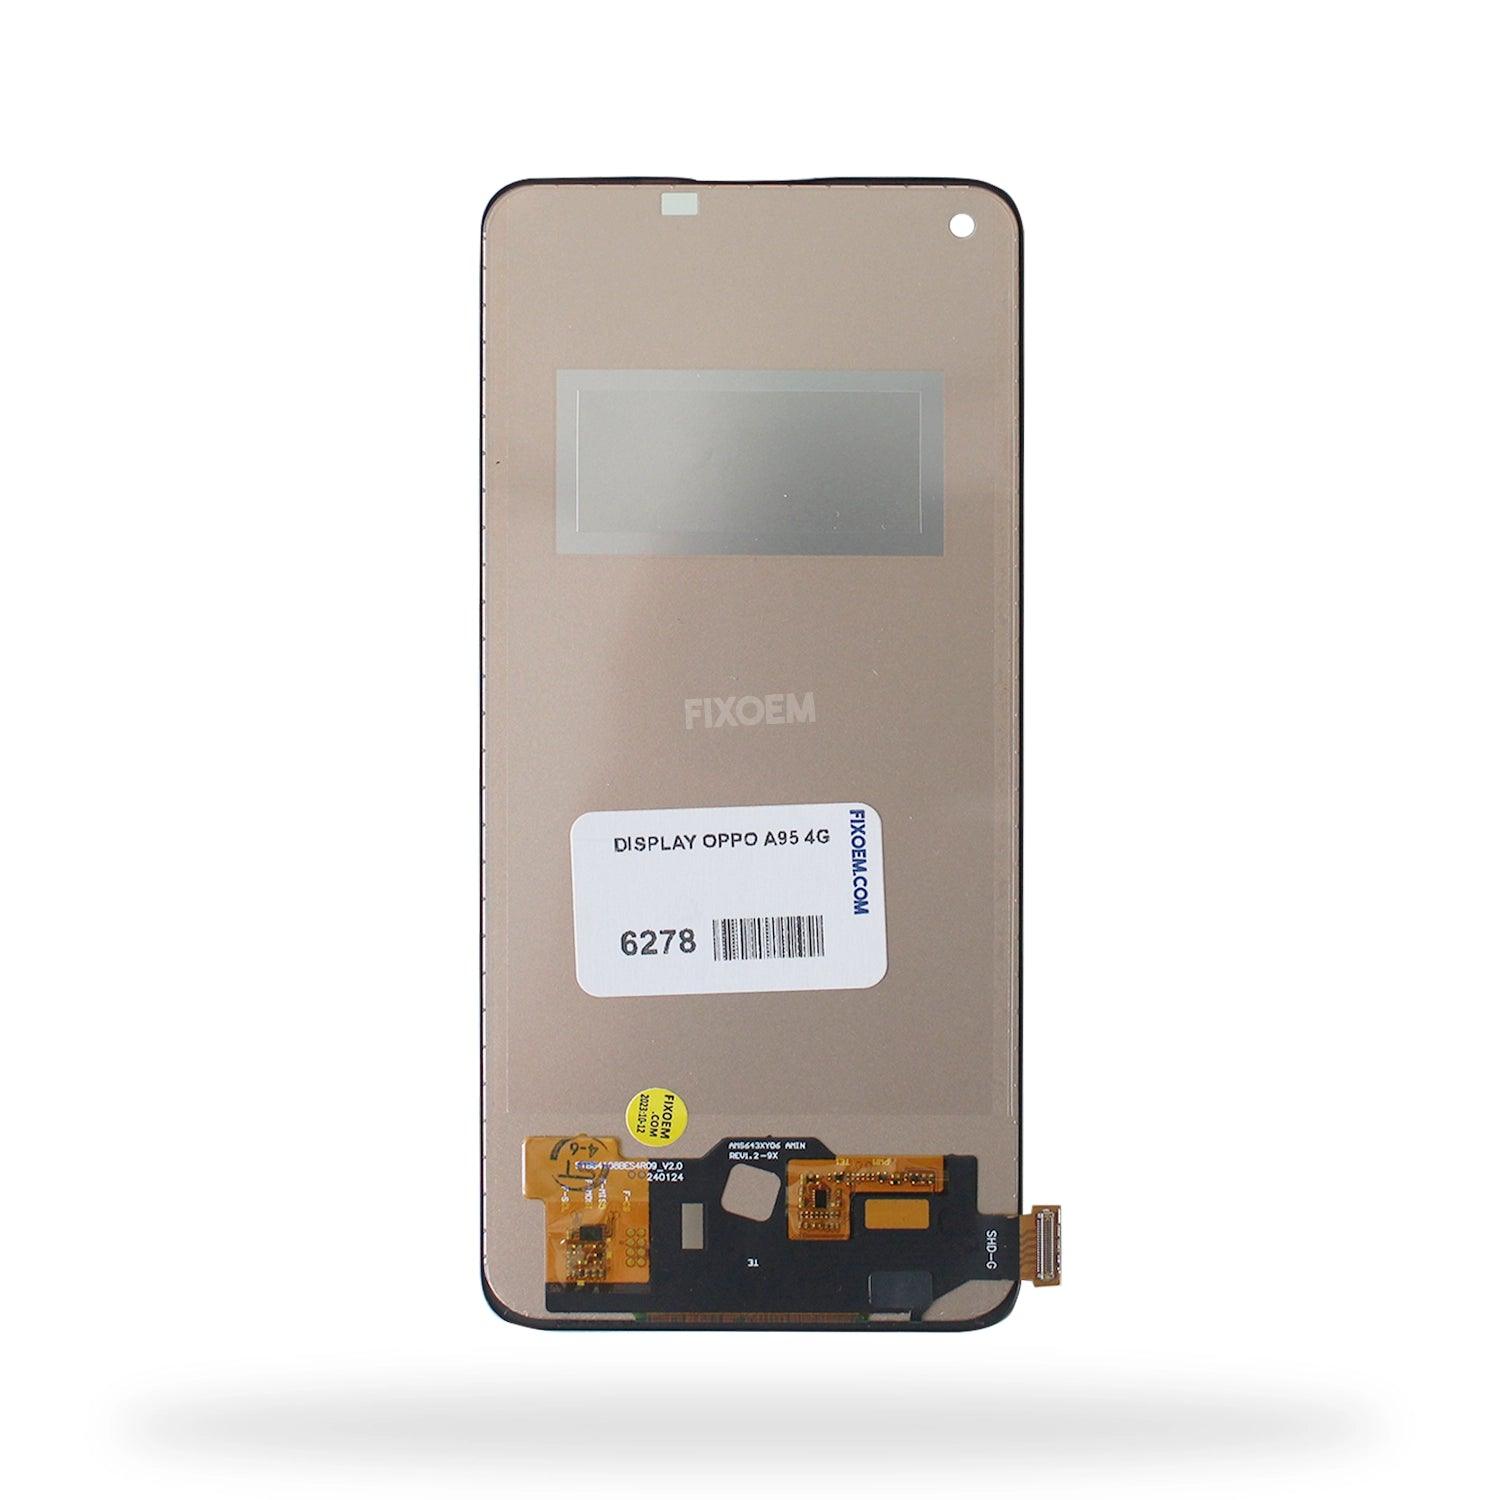 Display Oppo A95 4G a solo $ 230.00 Refaccion y puestos celulares, refurbish y microelectronica.- FixOEM